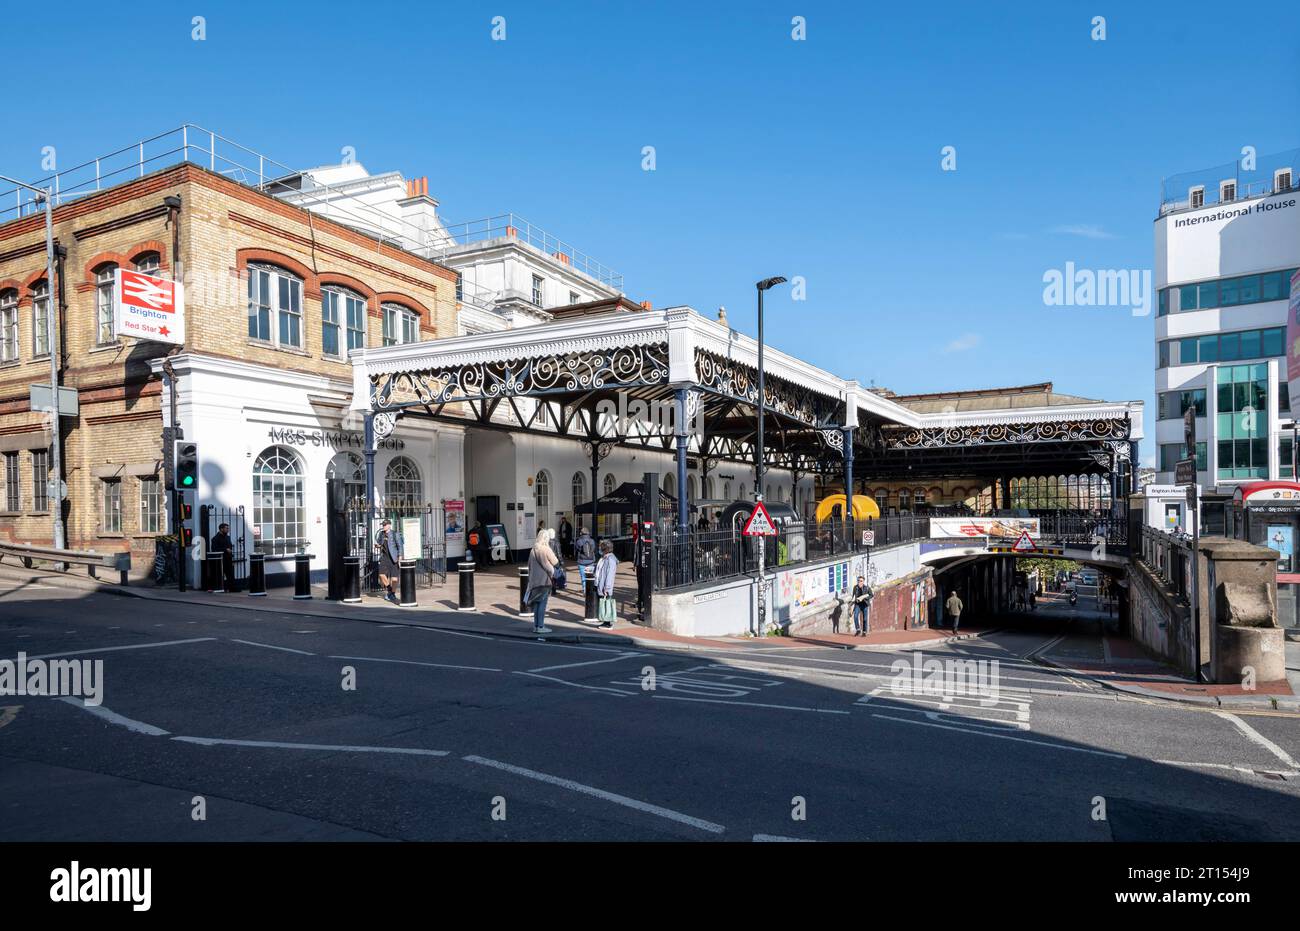 Das Äußere der Brighton Railway Station ist der südliche Endpunkt der Brighton Main Line, der westliche Endpunkt der East Coastway Line und der östliche Endpunkt der West Coastway Line in England sowie der Hauptbahnhof, der die Stadt Brighton bedient. Der Bahnhof verfügt über ein beeindruckendes großes doppelspanniges geschwungenes Glas- und Eisendach, das alle Bahnsteige bedeckt und 1999 und 200 grundlegend renoviert wurde Stockfoto